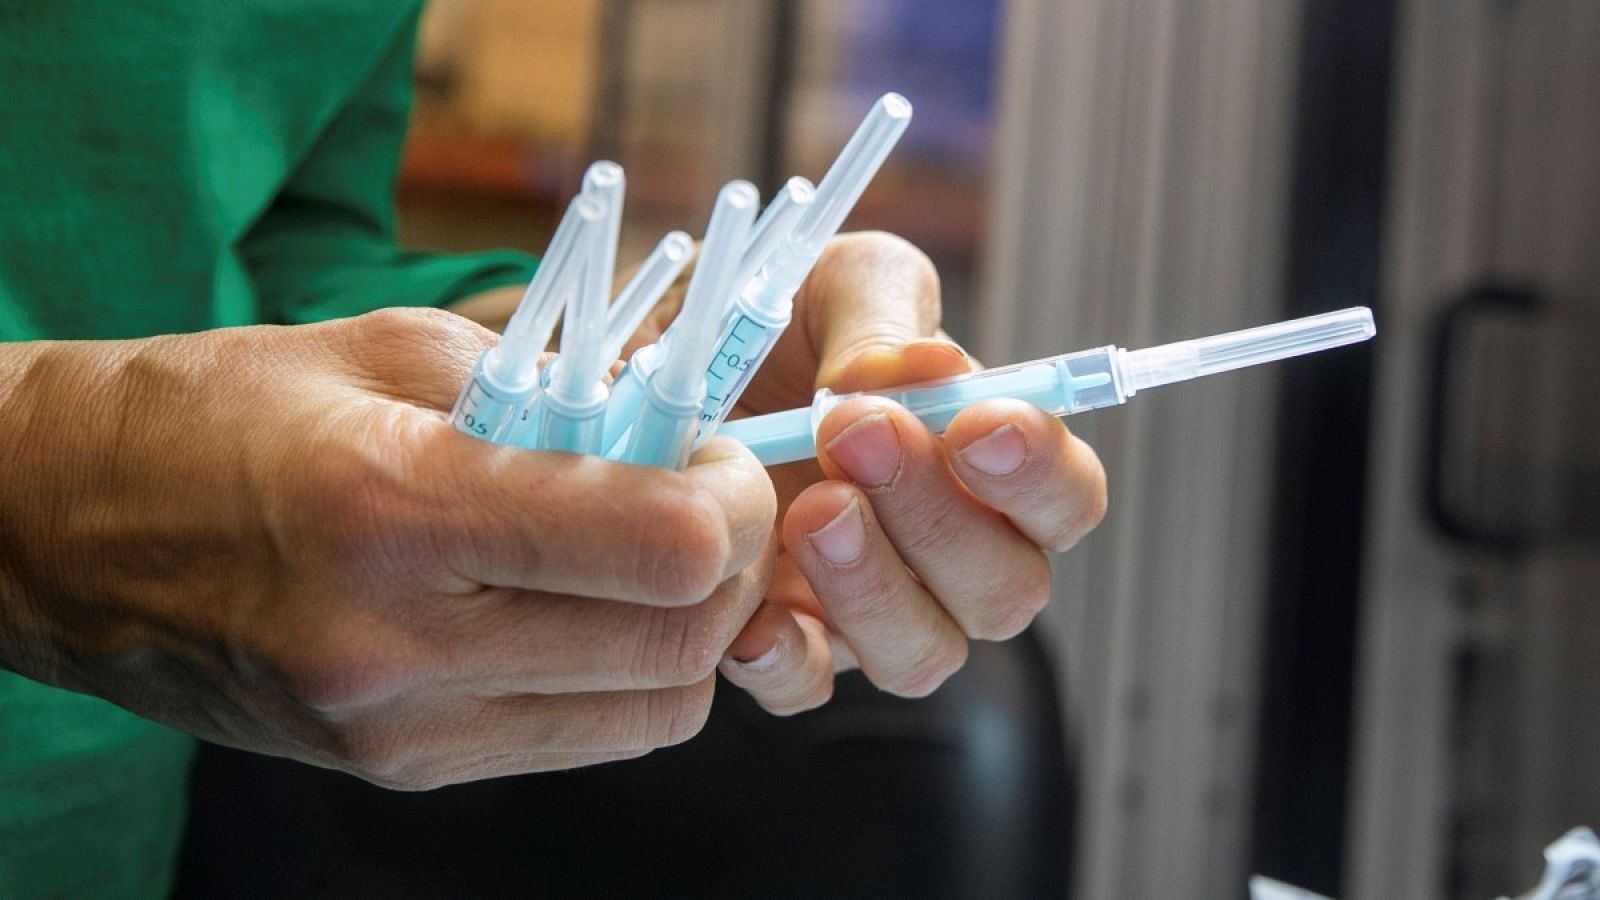 Una operaria inspecciona unas muestras de la jeringuilla para administrar la vacuna de la COVID-19.